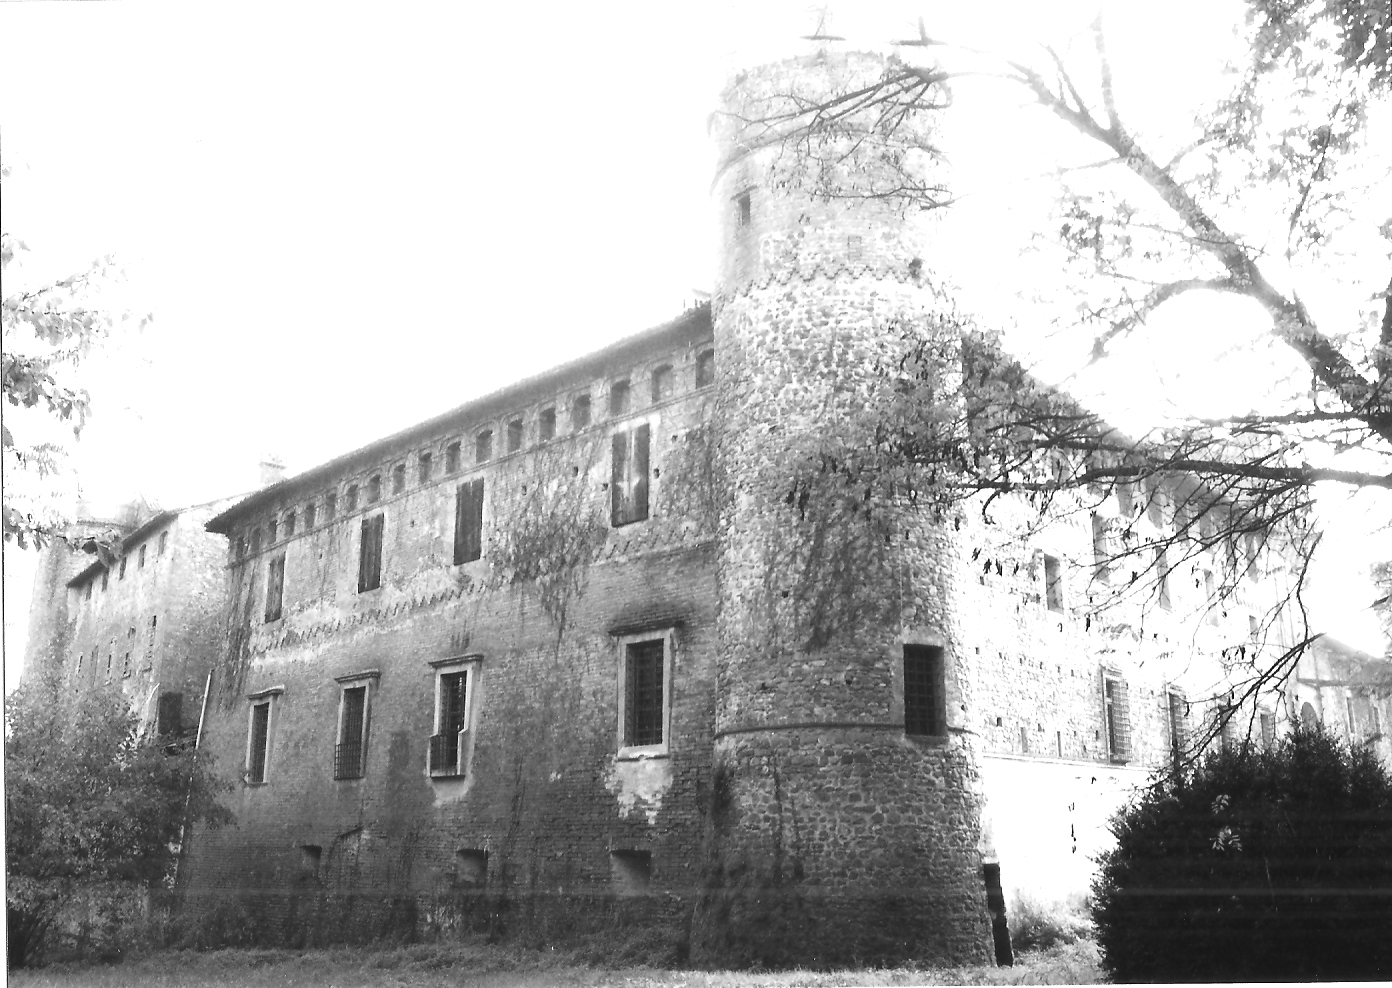 Castello di Castelnuovo (castello, fortificato) - Borgonovo Val Tidone (PC) 